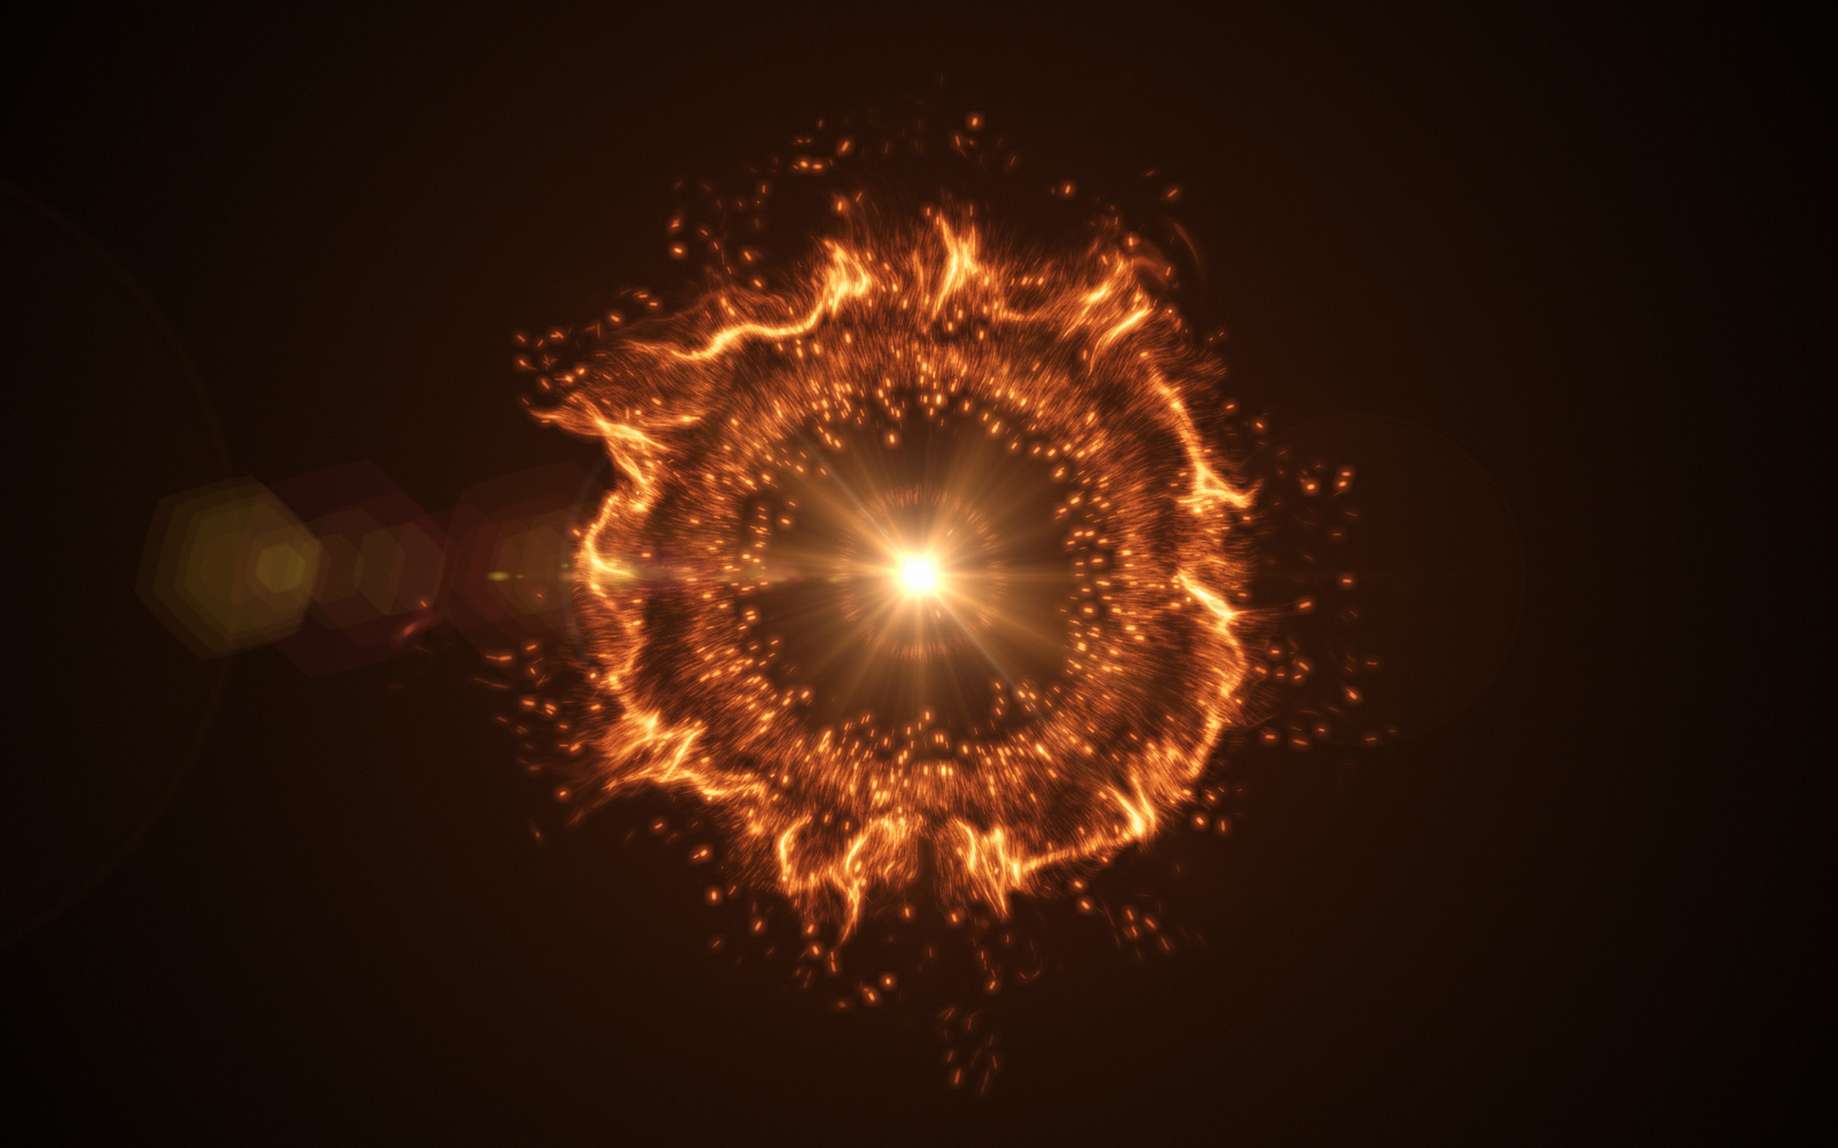 C’est grâce aux données recueillies par le télescope spatial Kepler et par plusieurs instruments au sol que des astronomies ont pu établir l’image la plus précise jamais obtenue des premiers instants de l’explosion d’une supernova de type Ia. © fotolia